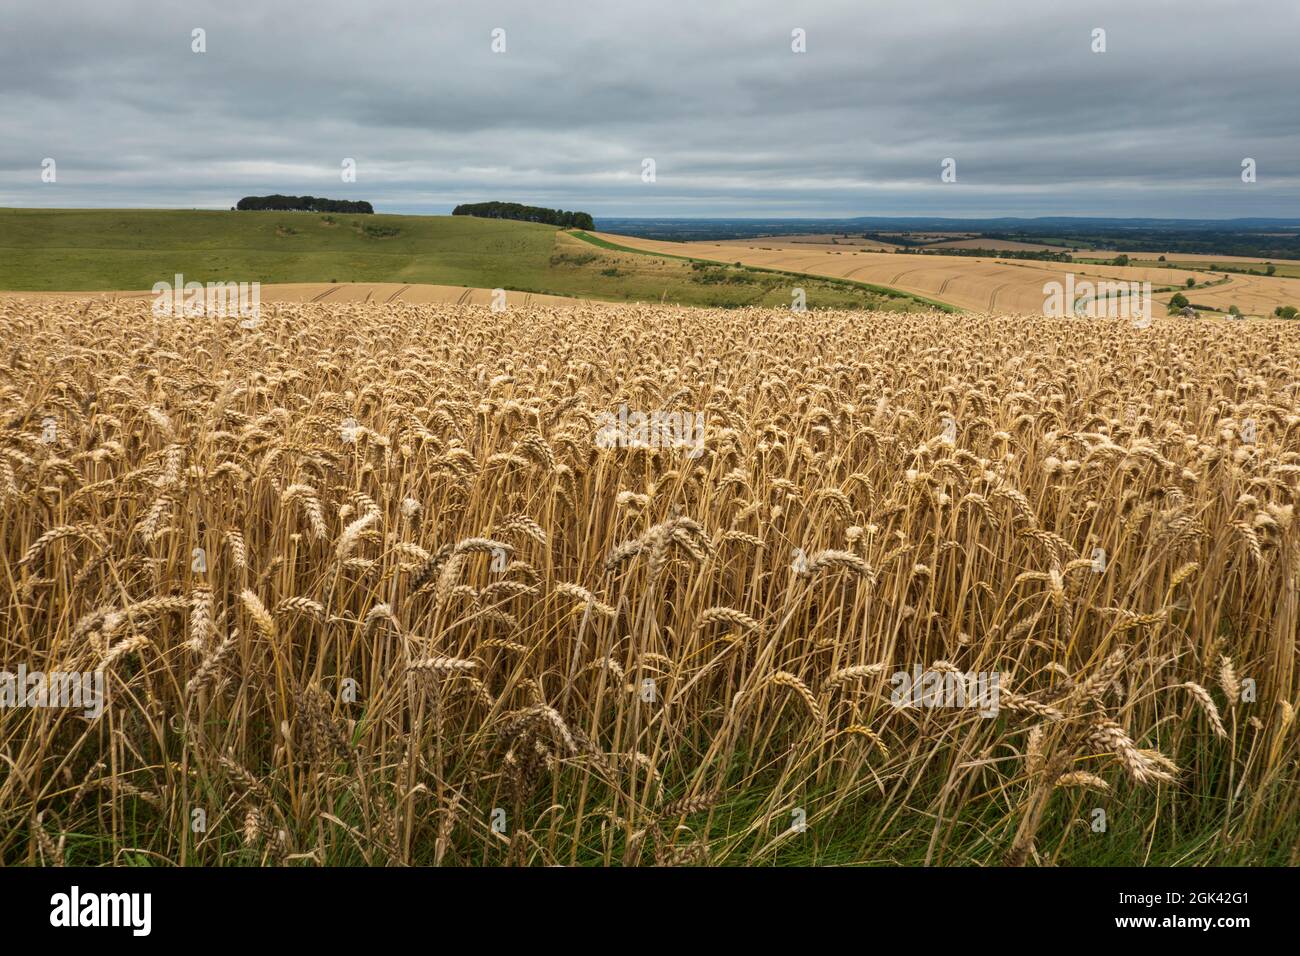 Golden wheatfield au-dessous de Devil's Punchbowl sur Hackpen Hill avec ciel gris, près de Wantage, Oxfordshire, Angleterre, Royaume-Uni, Europe Banque D'Images